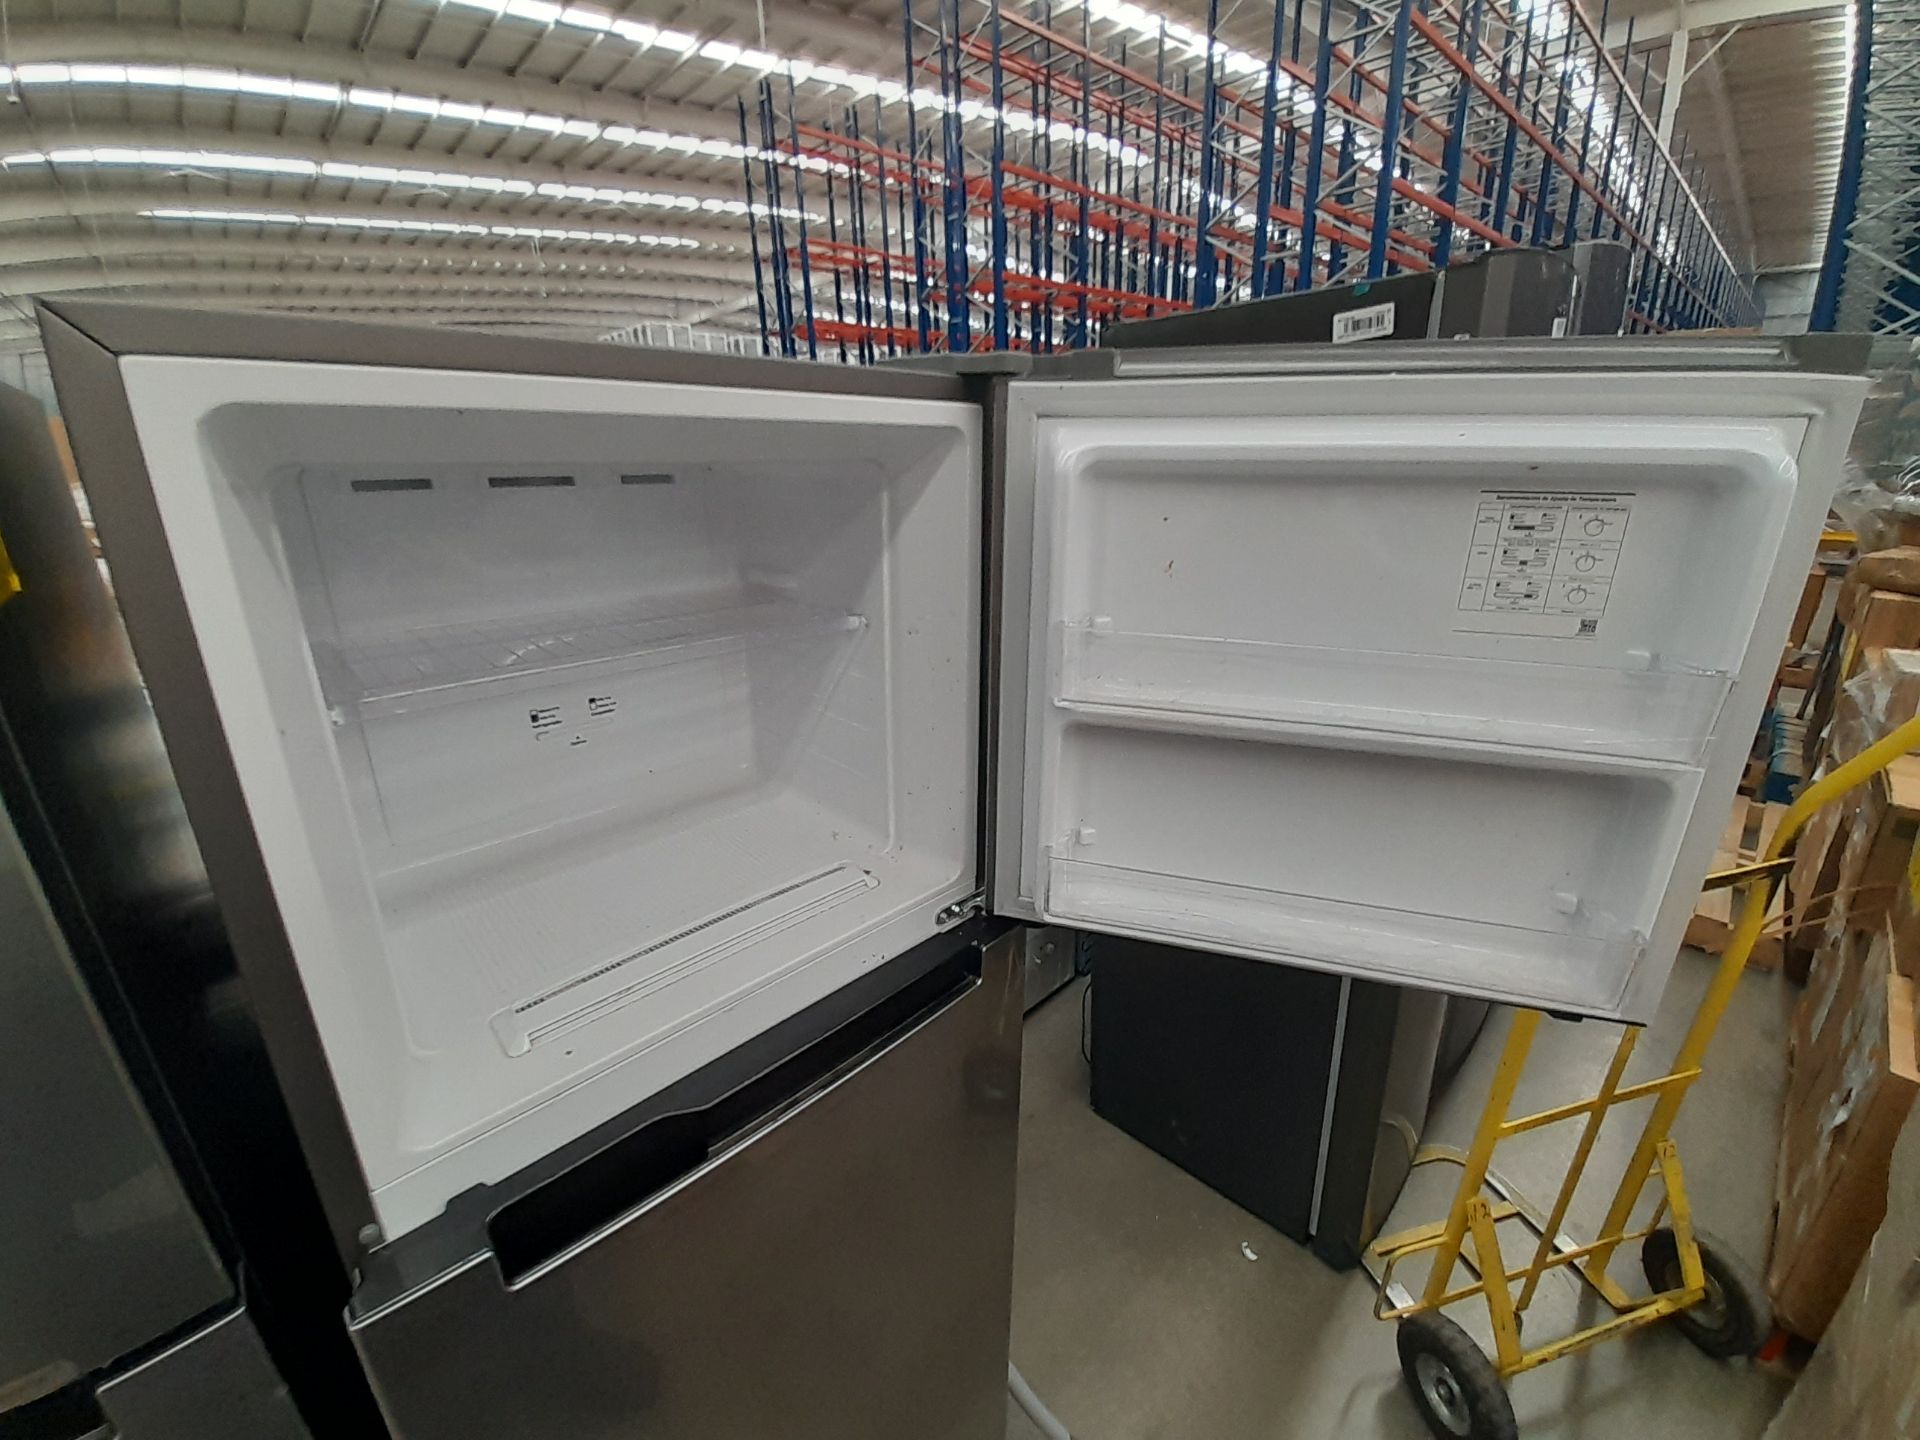 Lote de 2 refrigeradores contiene: 1 refrigerador Marca SAMSUNG, Modelo RT29A500JS8, Serie 03920W, - Image 6 of 8